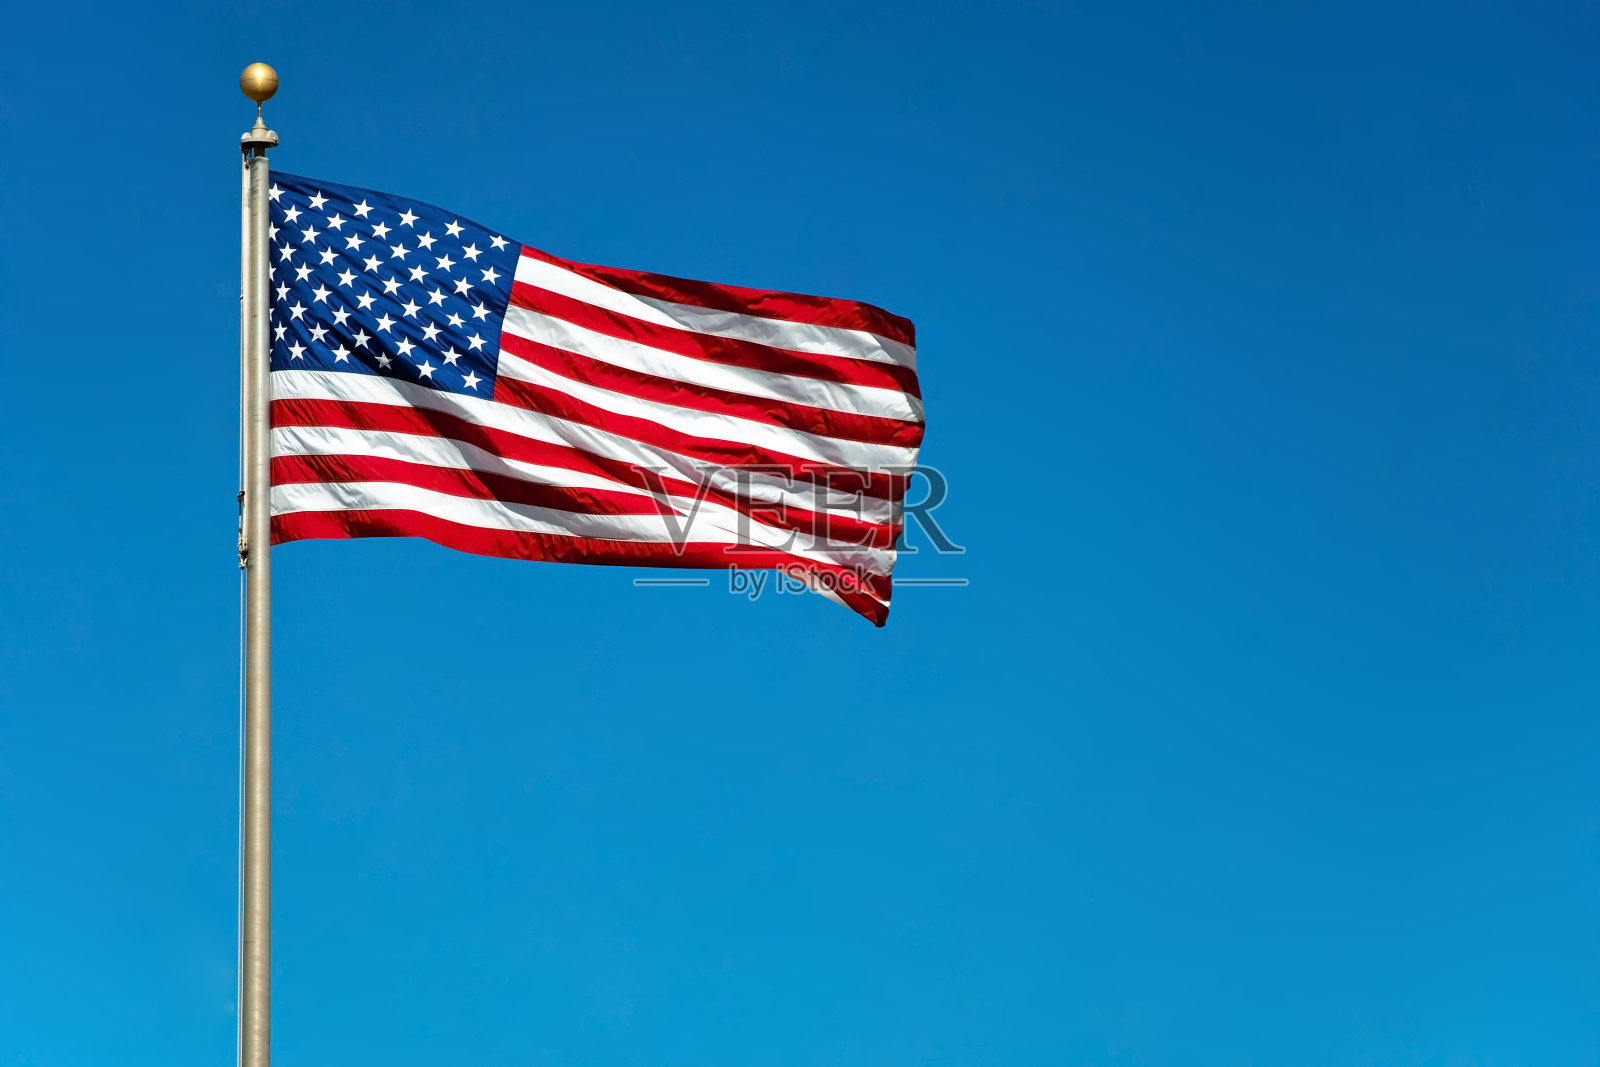 与之形成对比的照片是美国国旗在坚实的蓝天下飘扬照片摄影图片